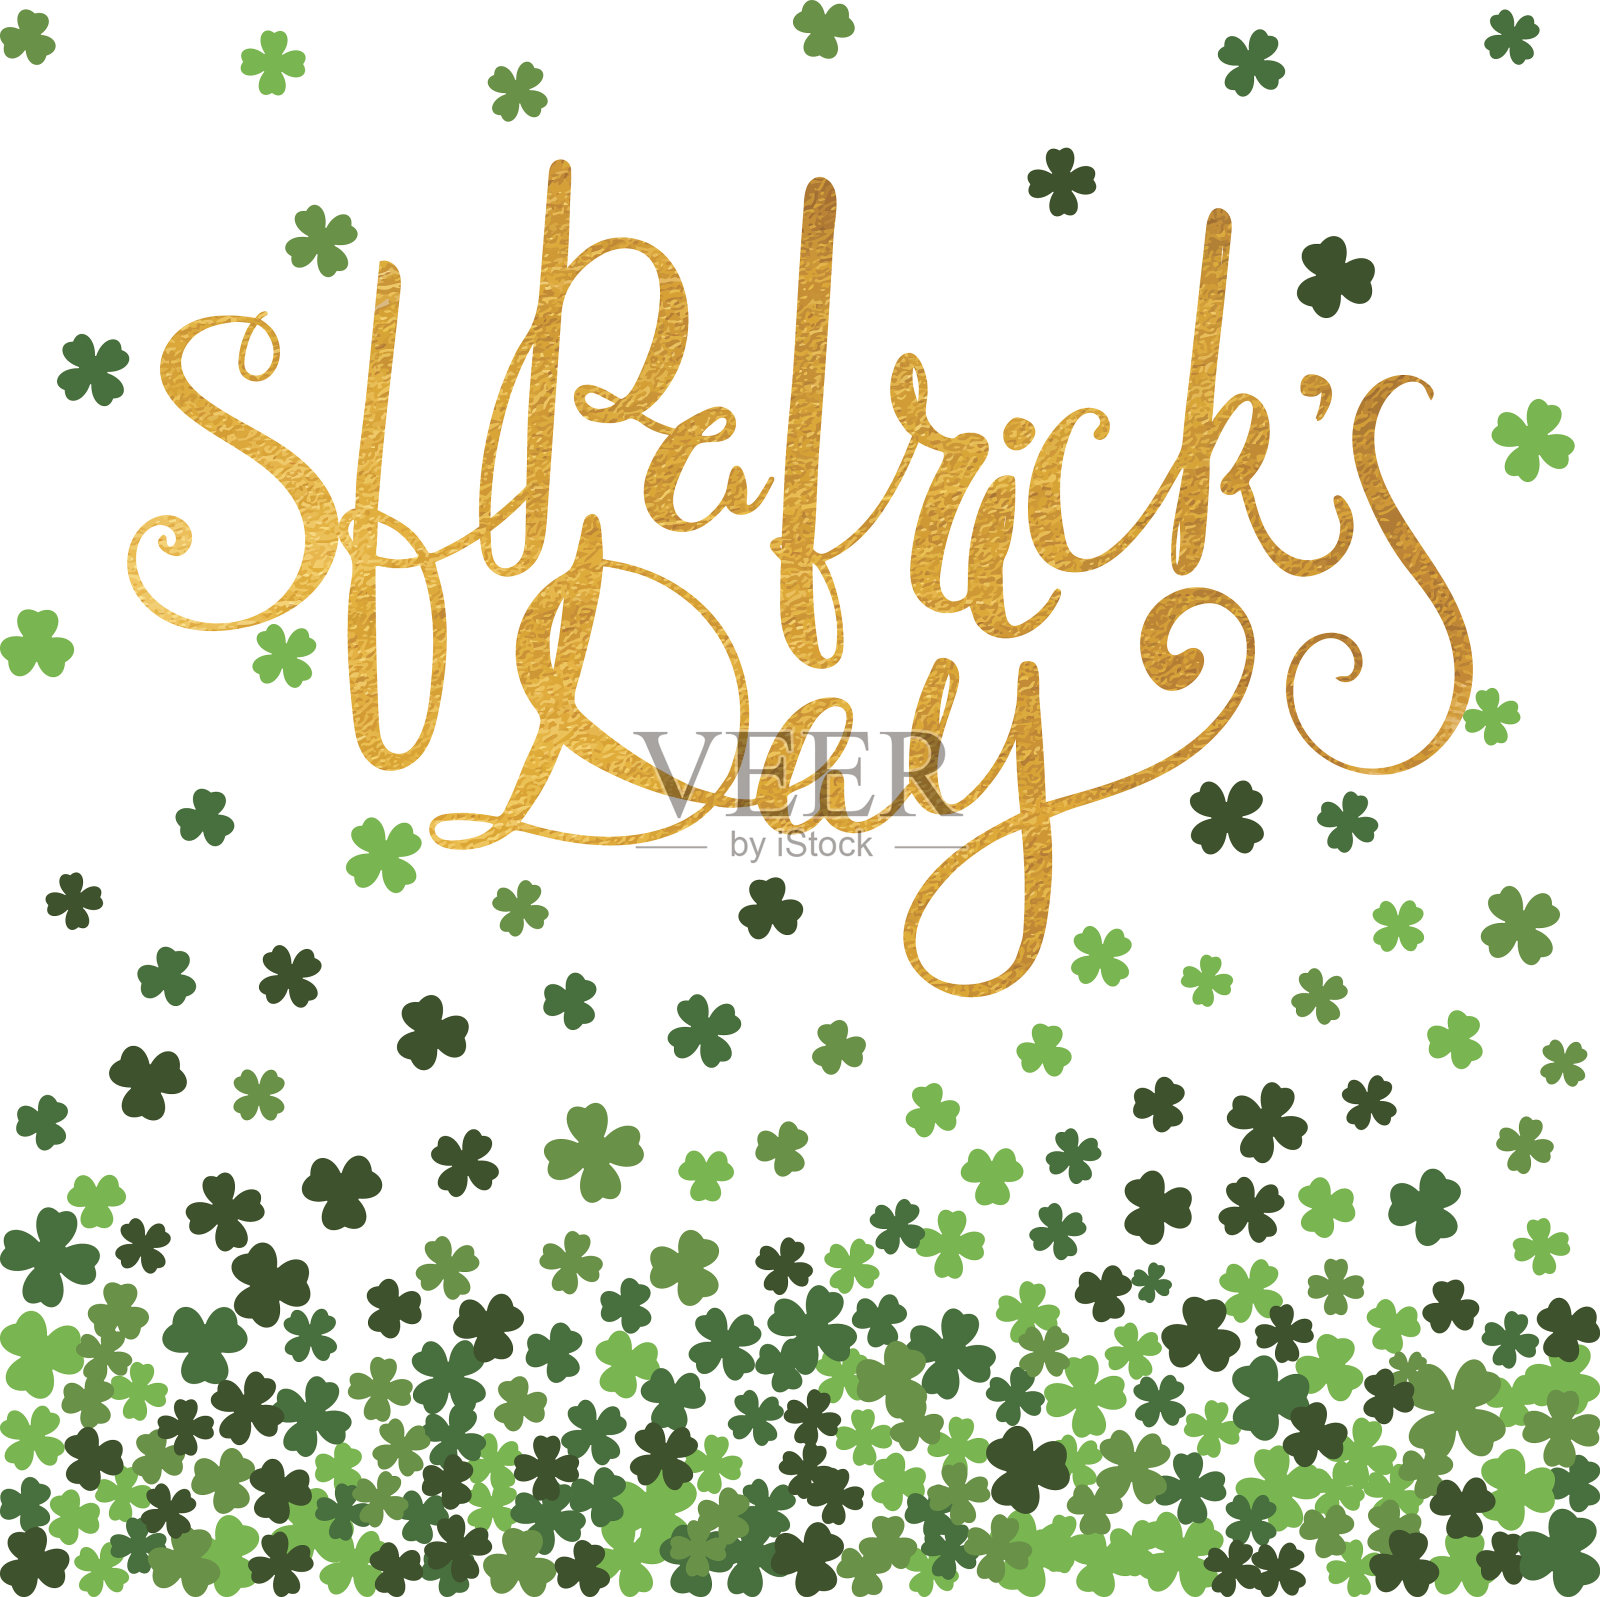 用爱尔兰金字来表示圣帕特里克节。设计元素图片